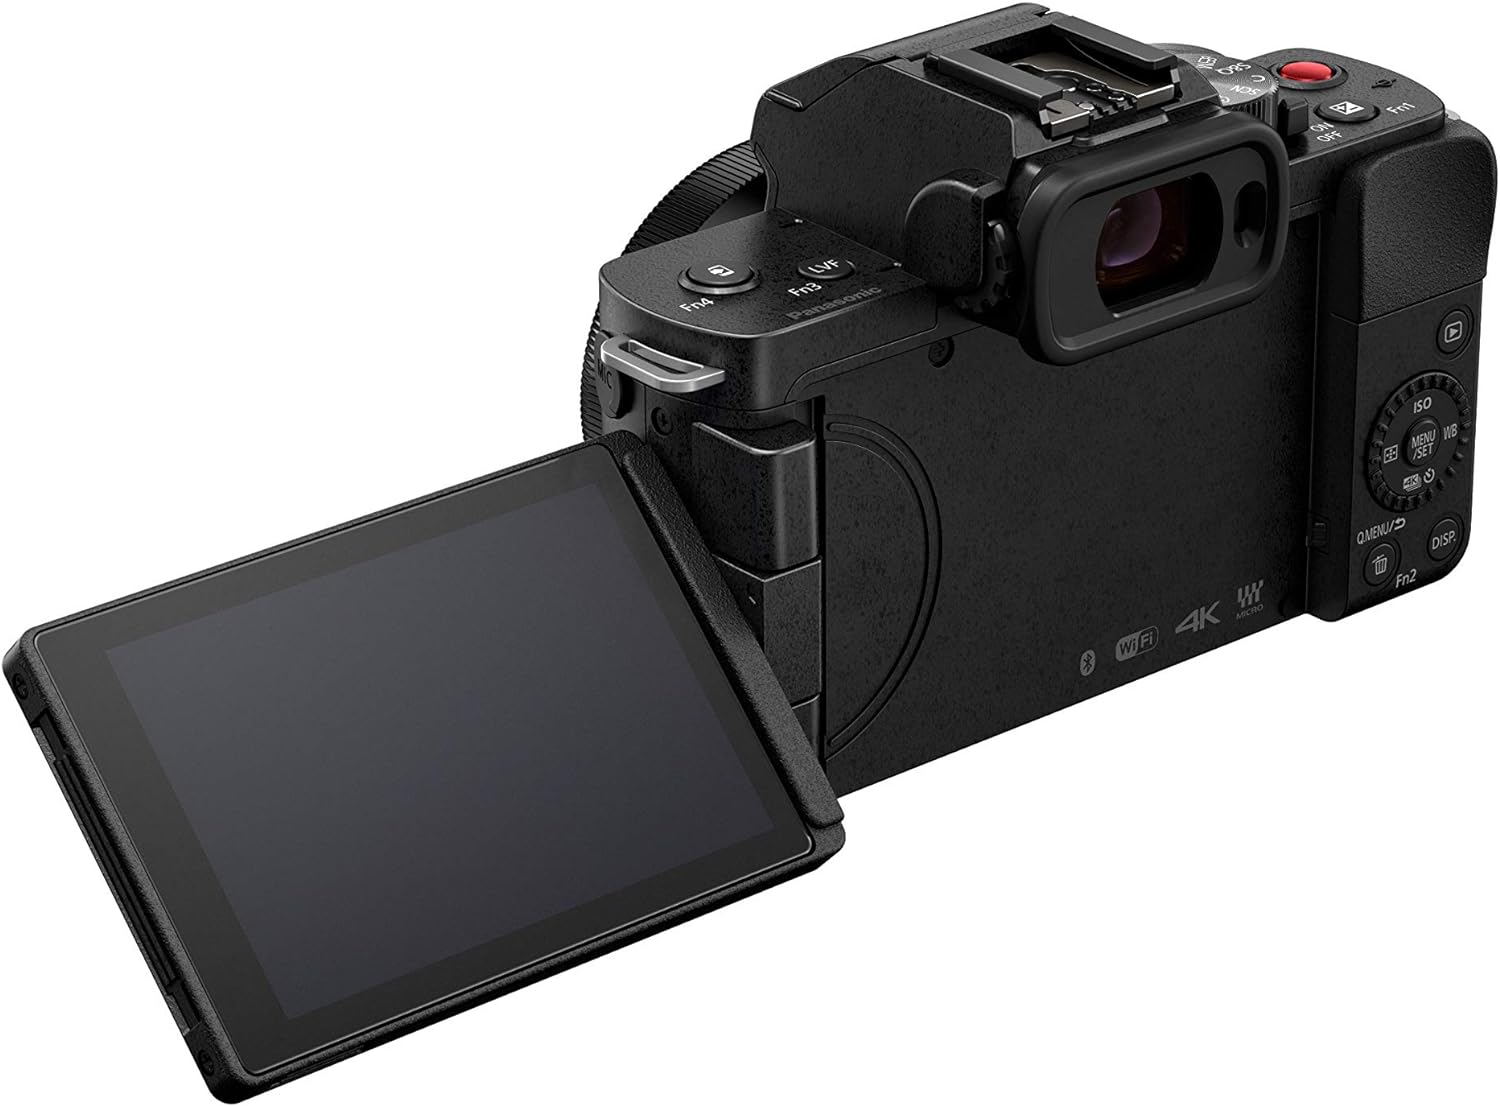 Panasonic LUMIX G100 4k Mirrorless Camera for Photo and Video - $450